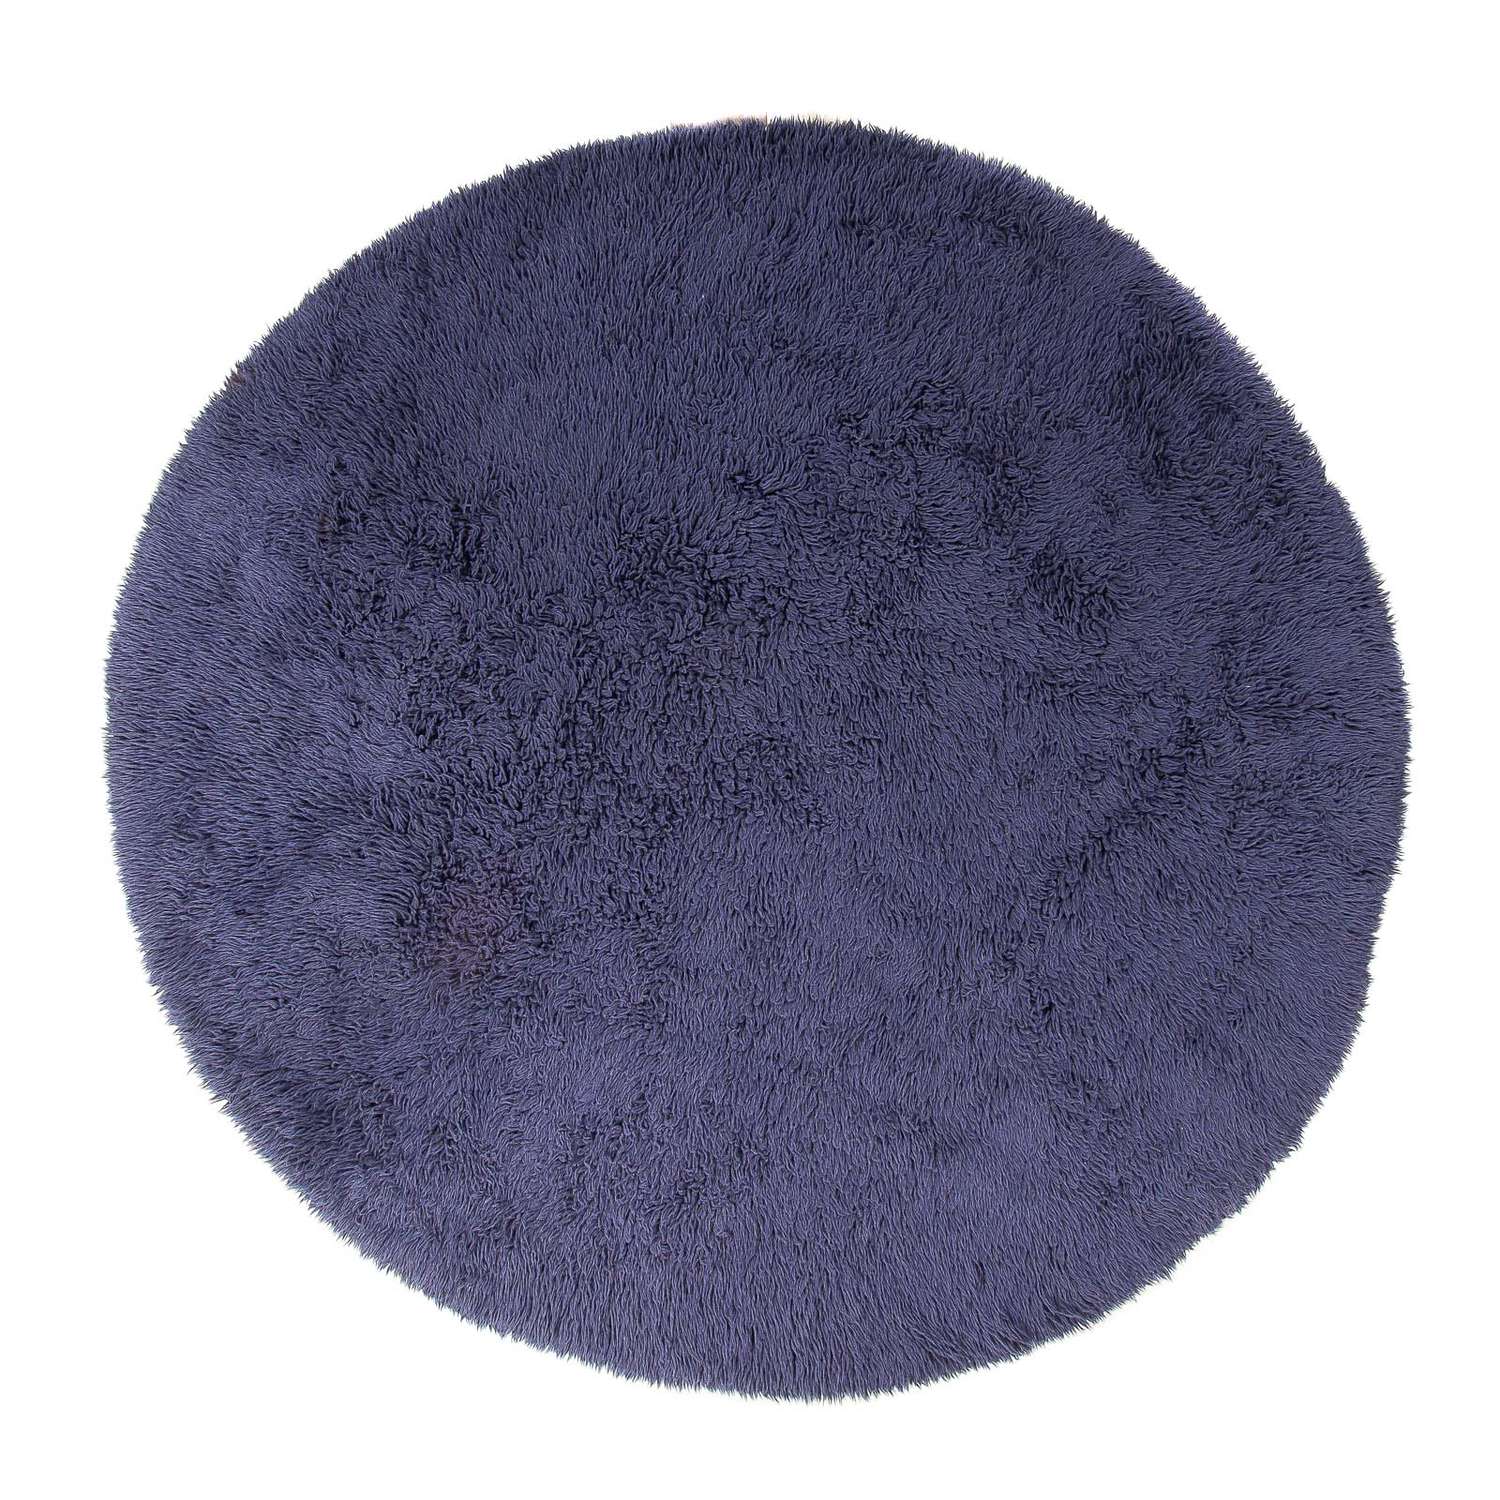 High-Pile Rug round  - 261 x 261 cm - dark blue